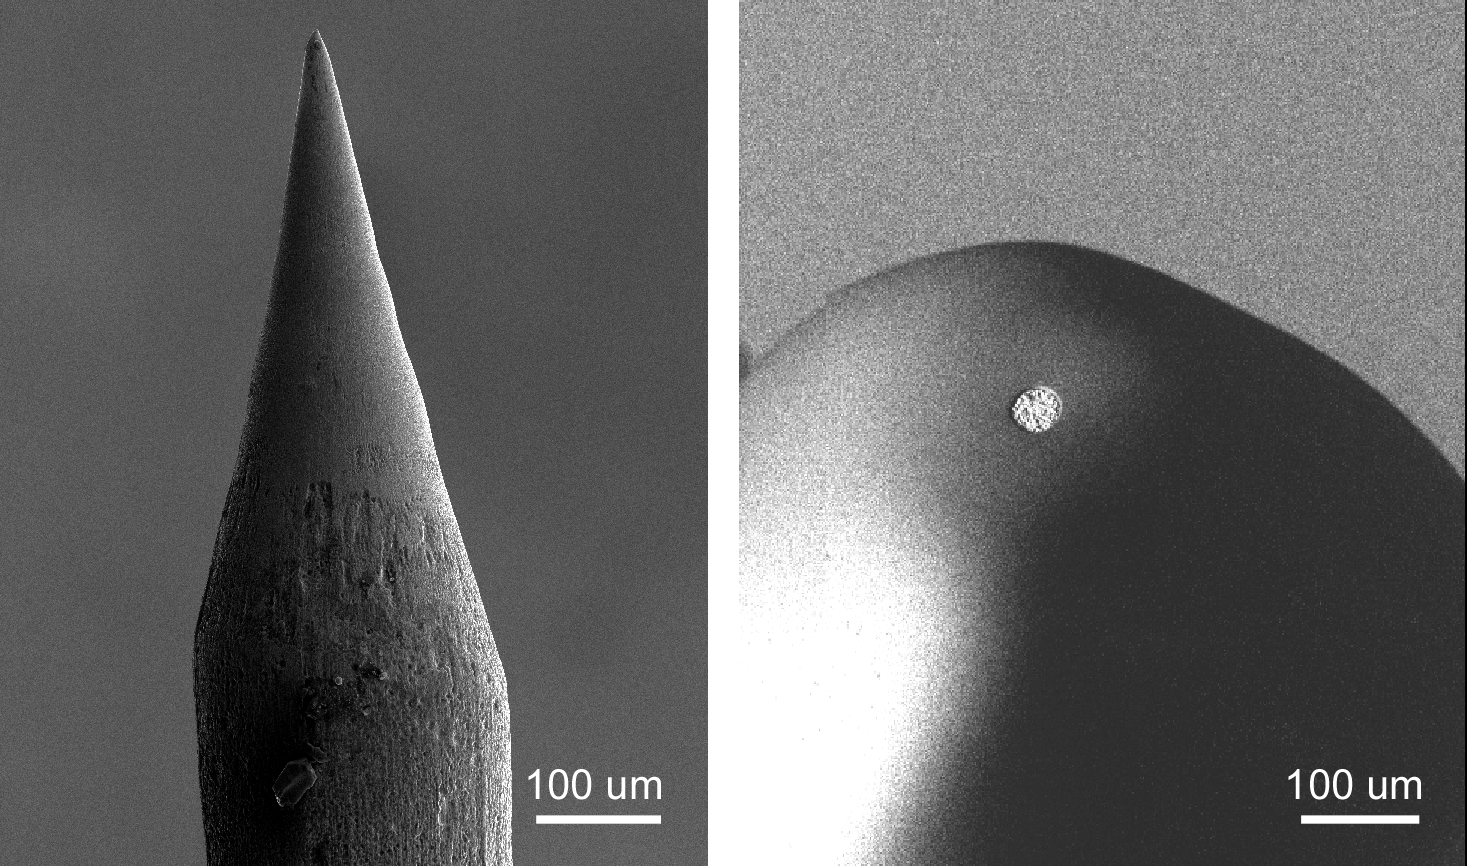 左)金ナノニードル電極、右)銀ワイヤをガラスピペットに埋め込んだマイクロ電極